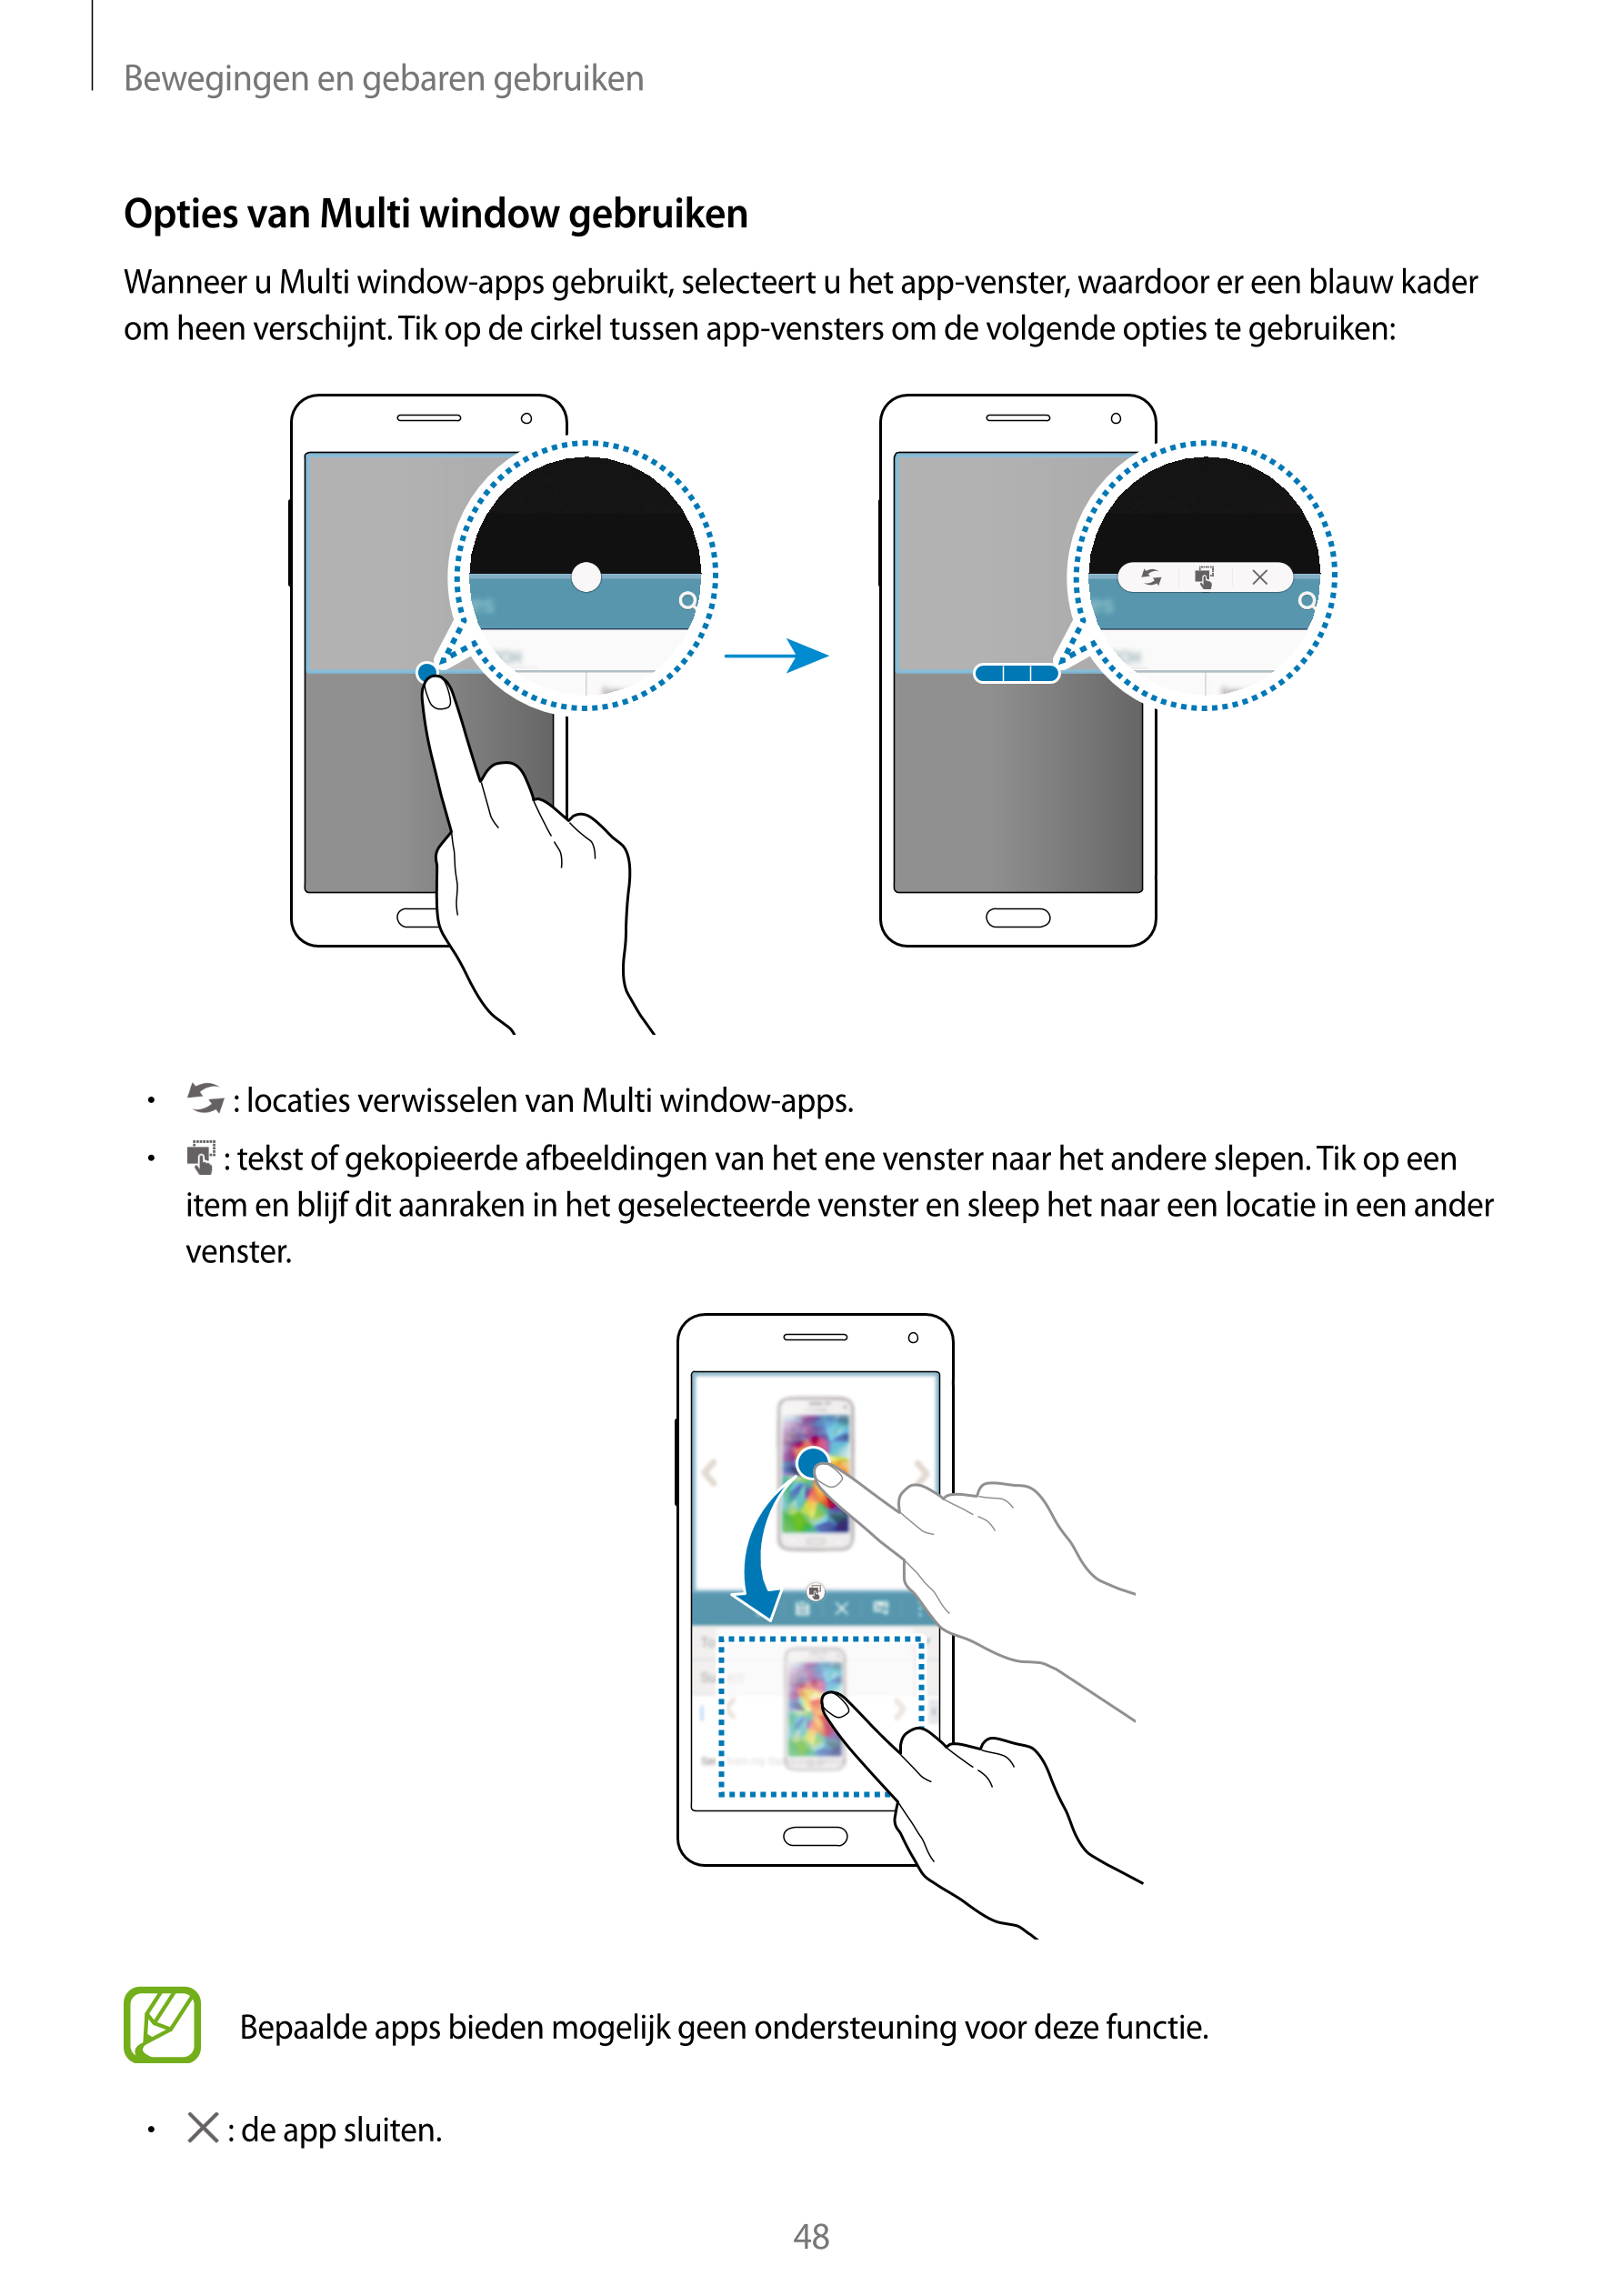 Bewegingen en gebaren gebruiken
Opties van Multi window gebruiken
Wanneer u Multi window-apps gebruikt, selecteert u het app-ven